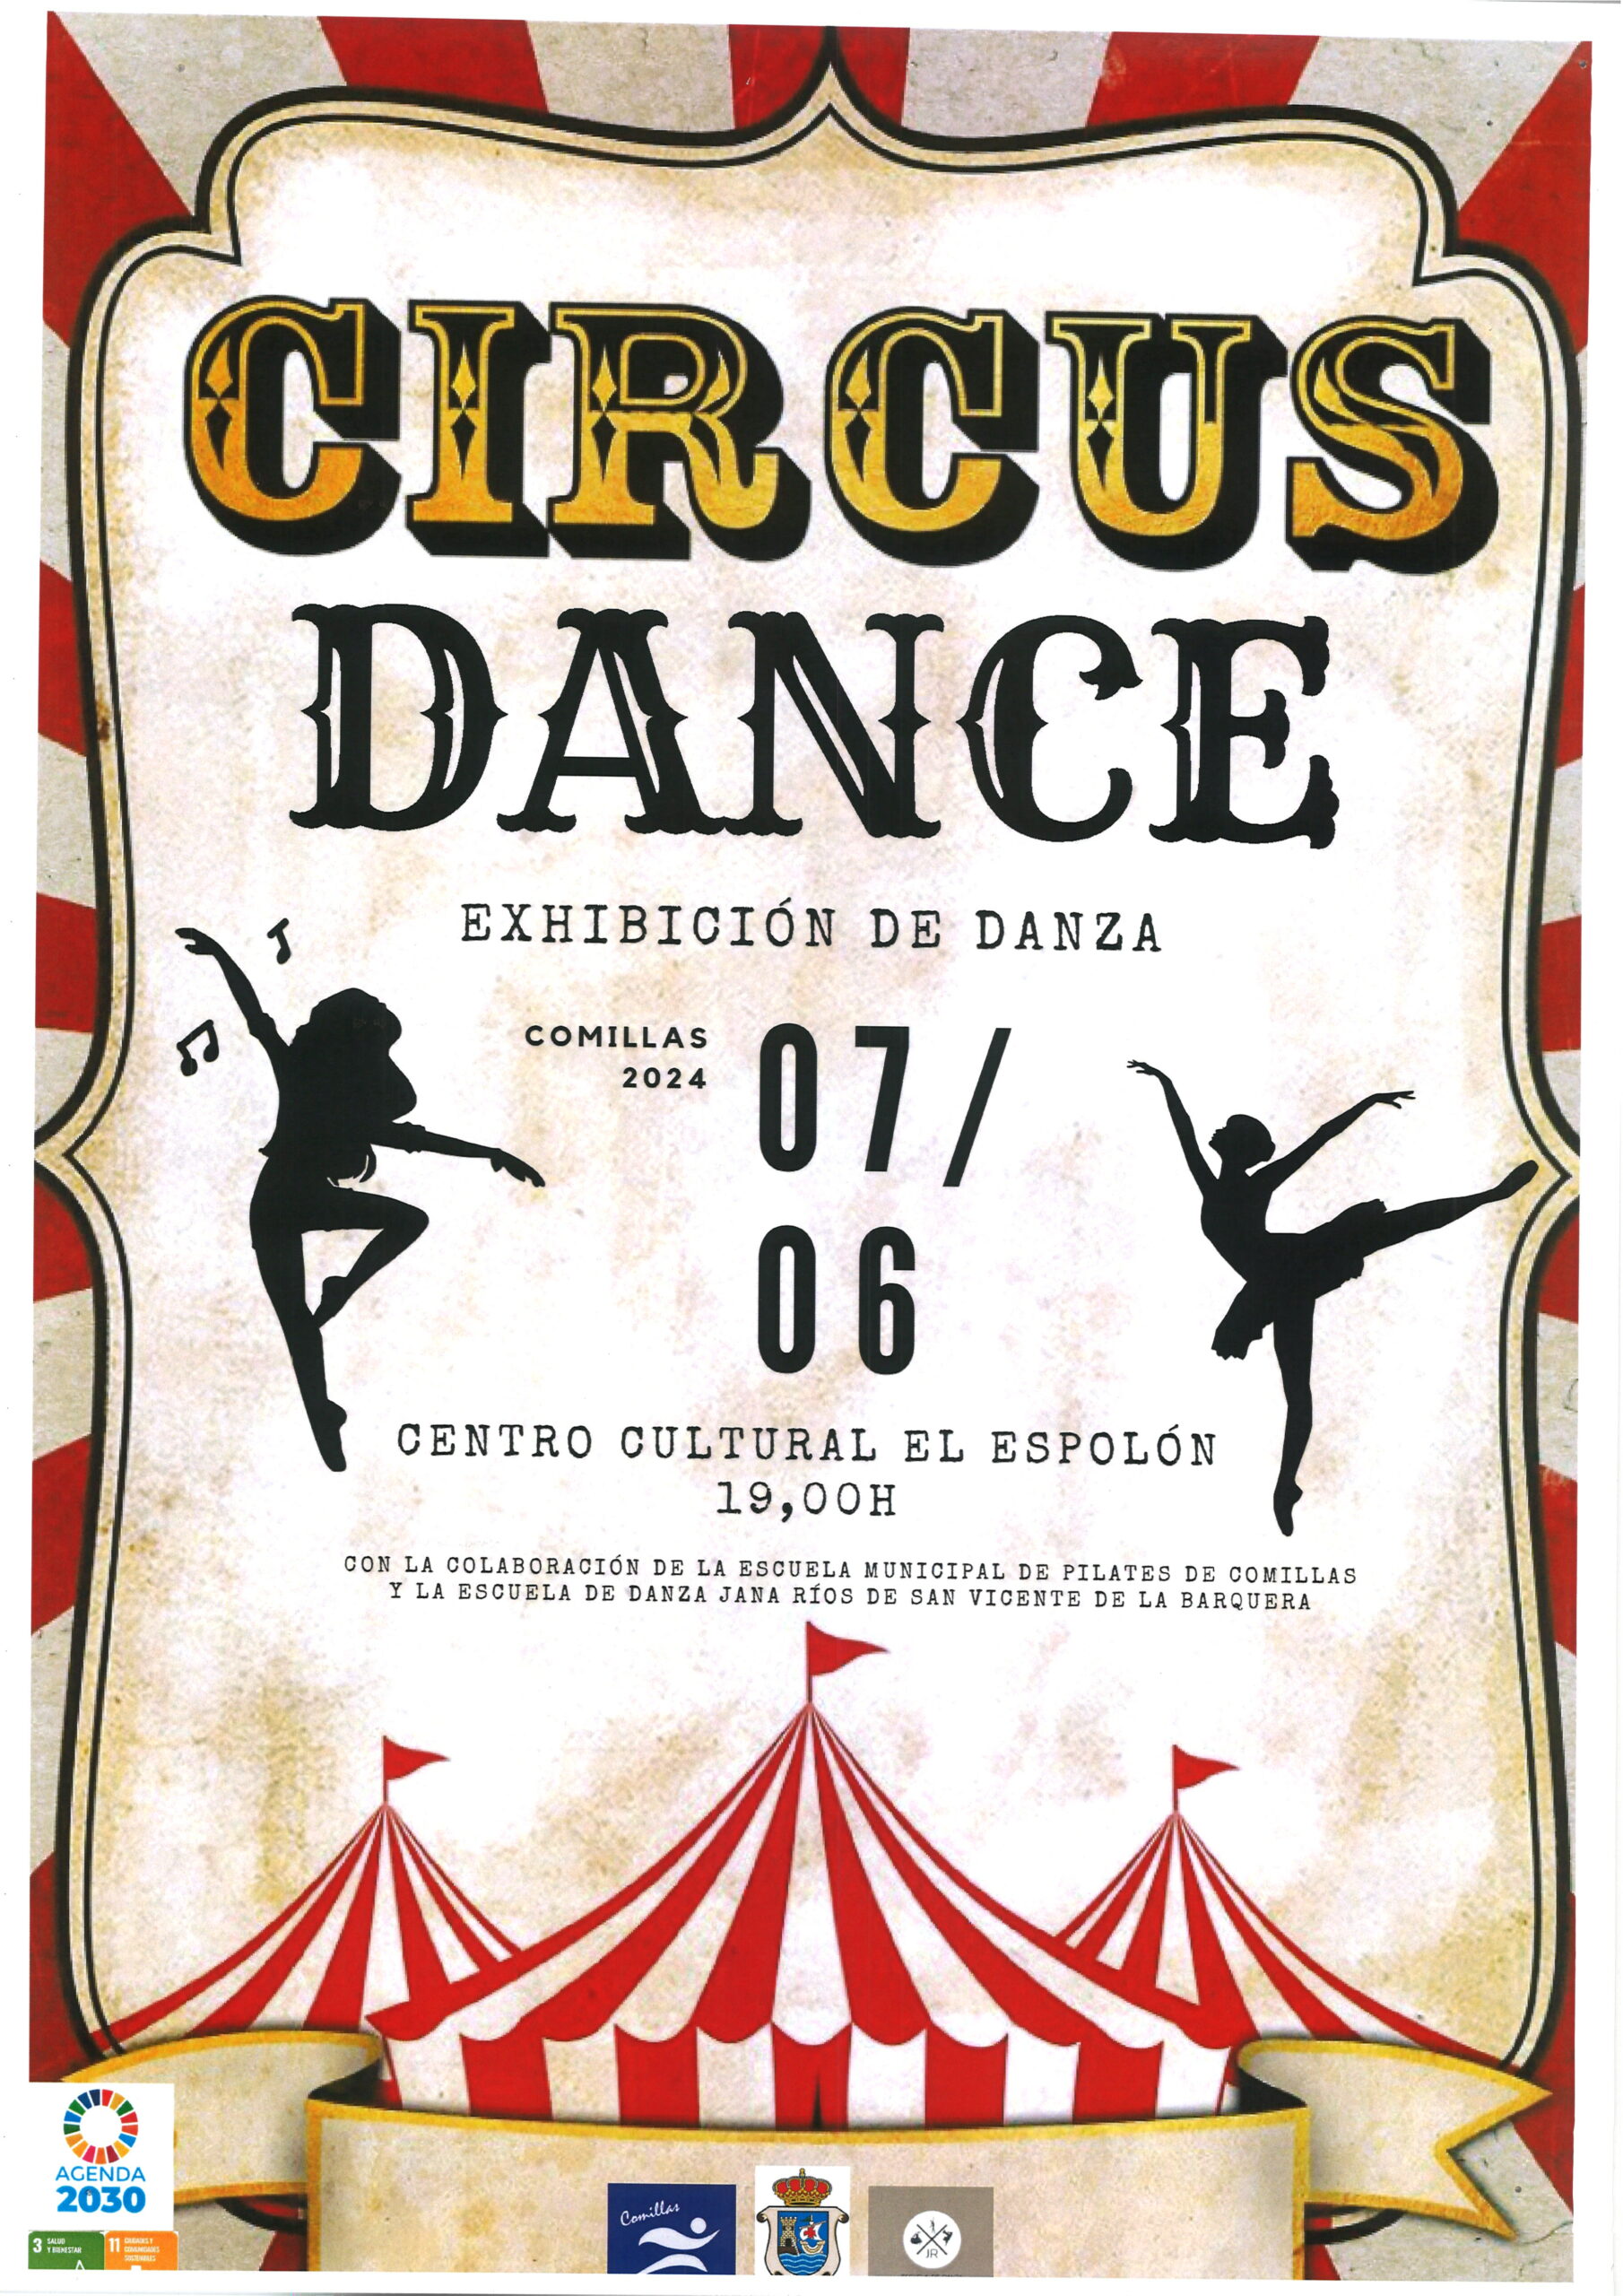 CIRCUS DANCE EXHIBICION DE DANZA